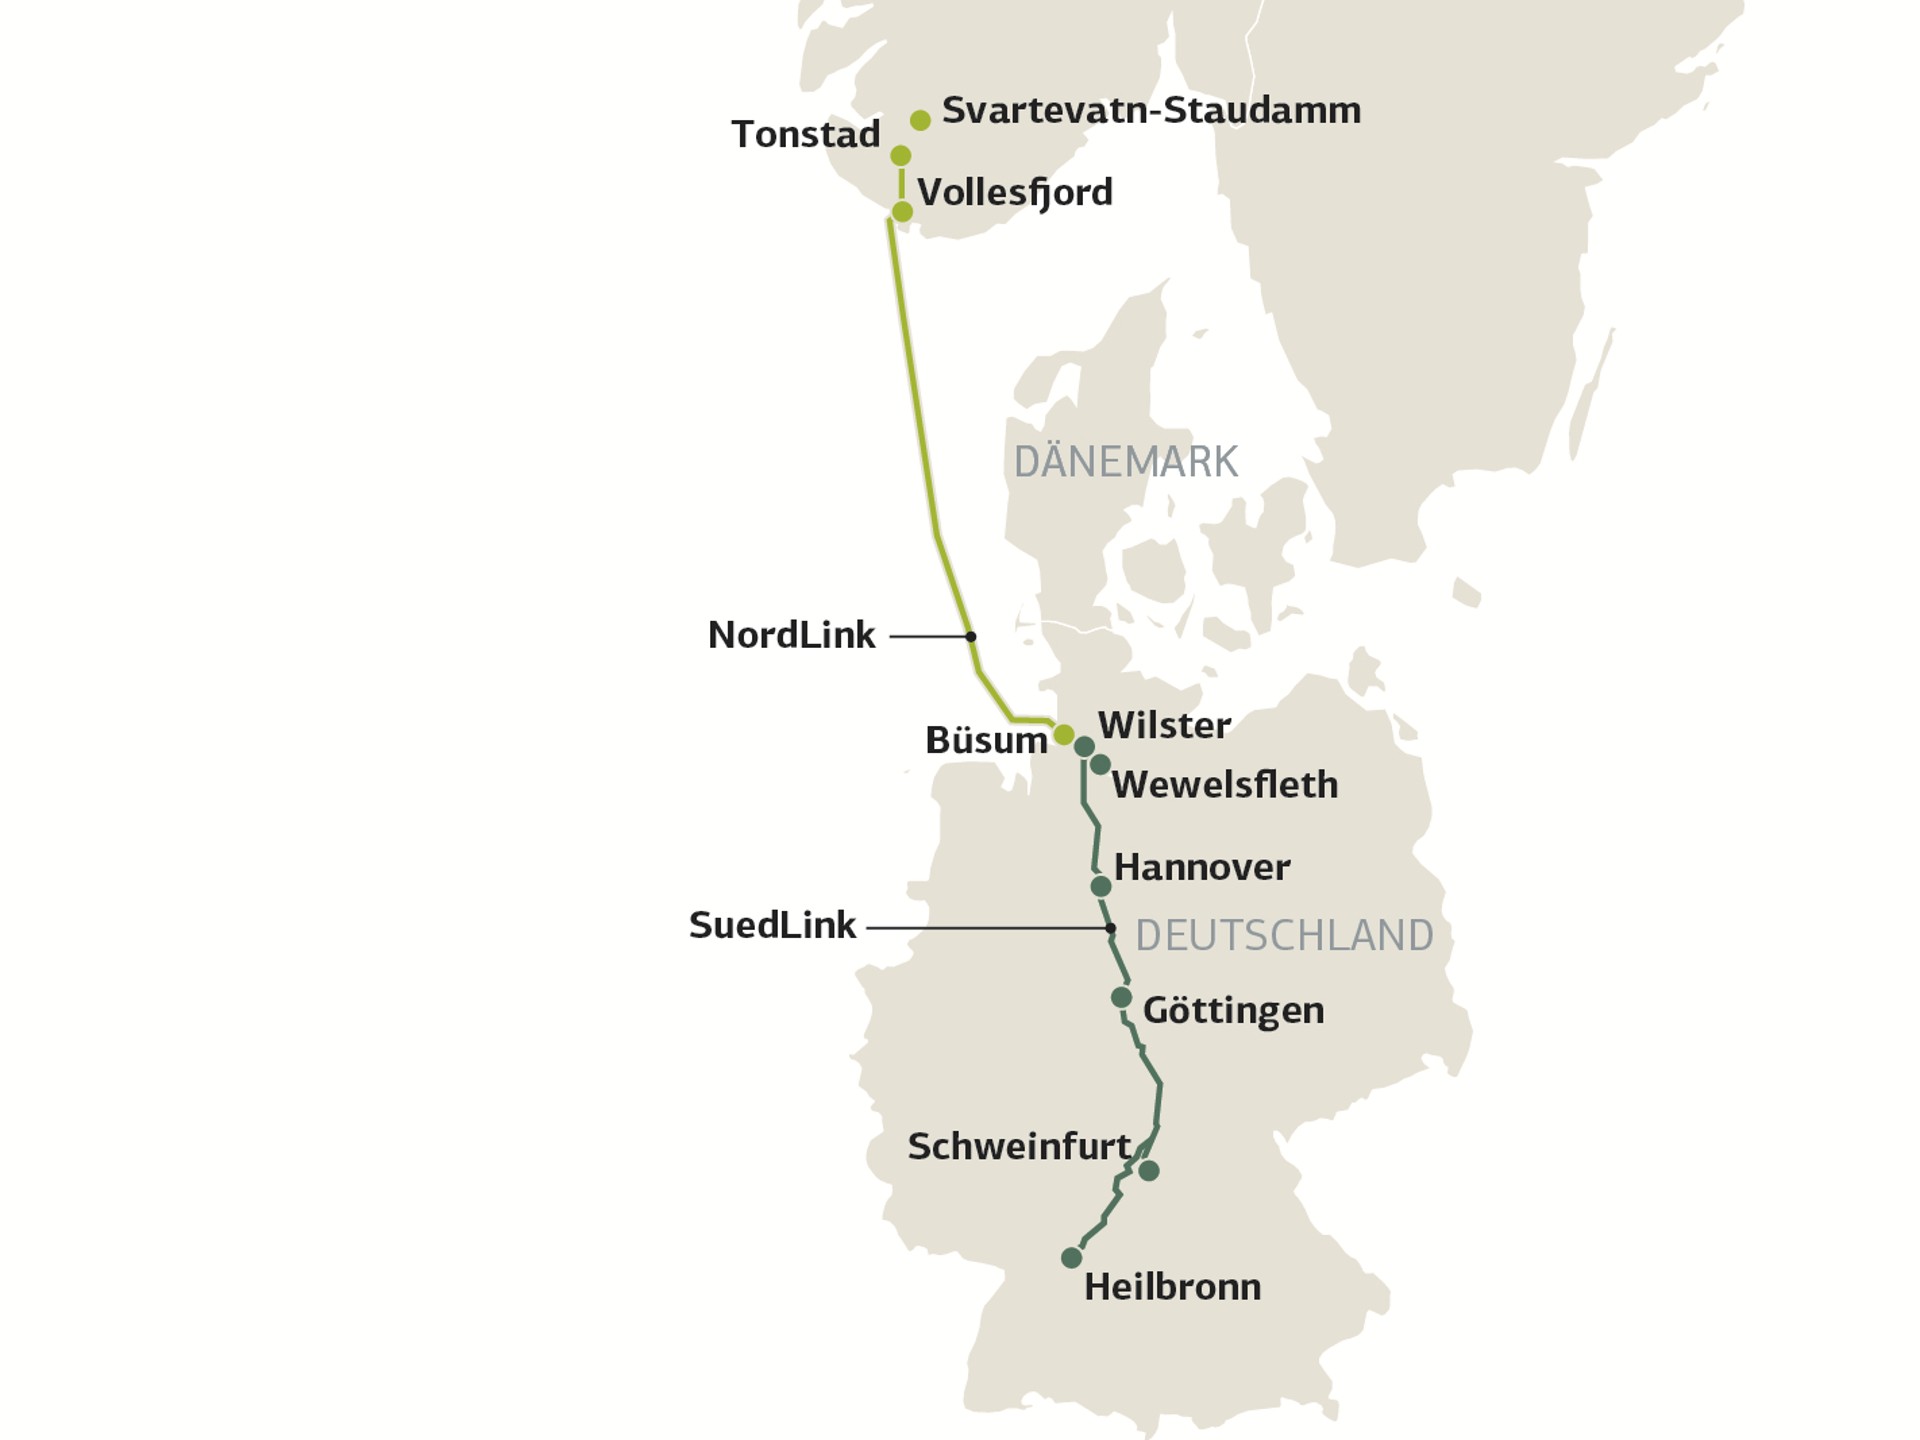 Map of NordLink and SuedLink